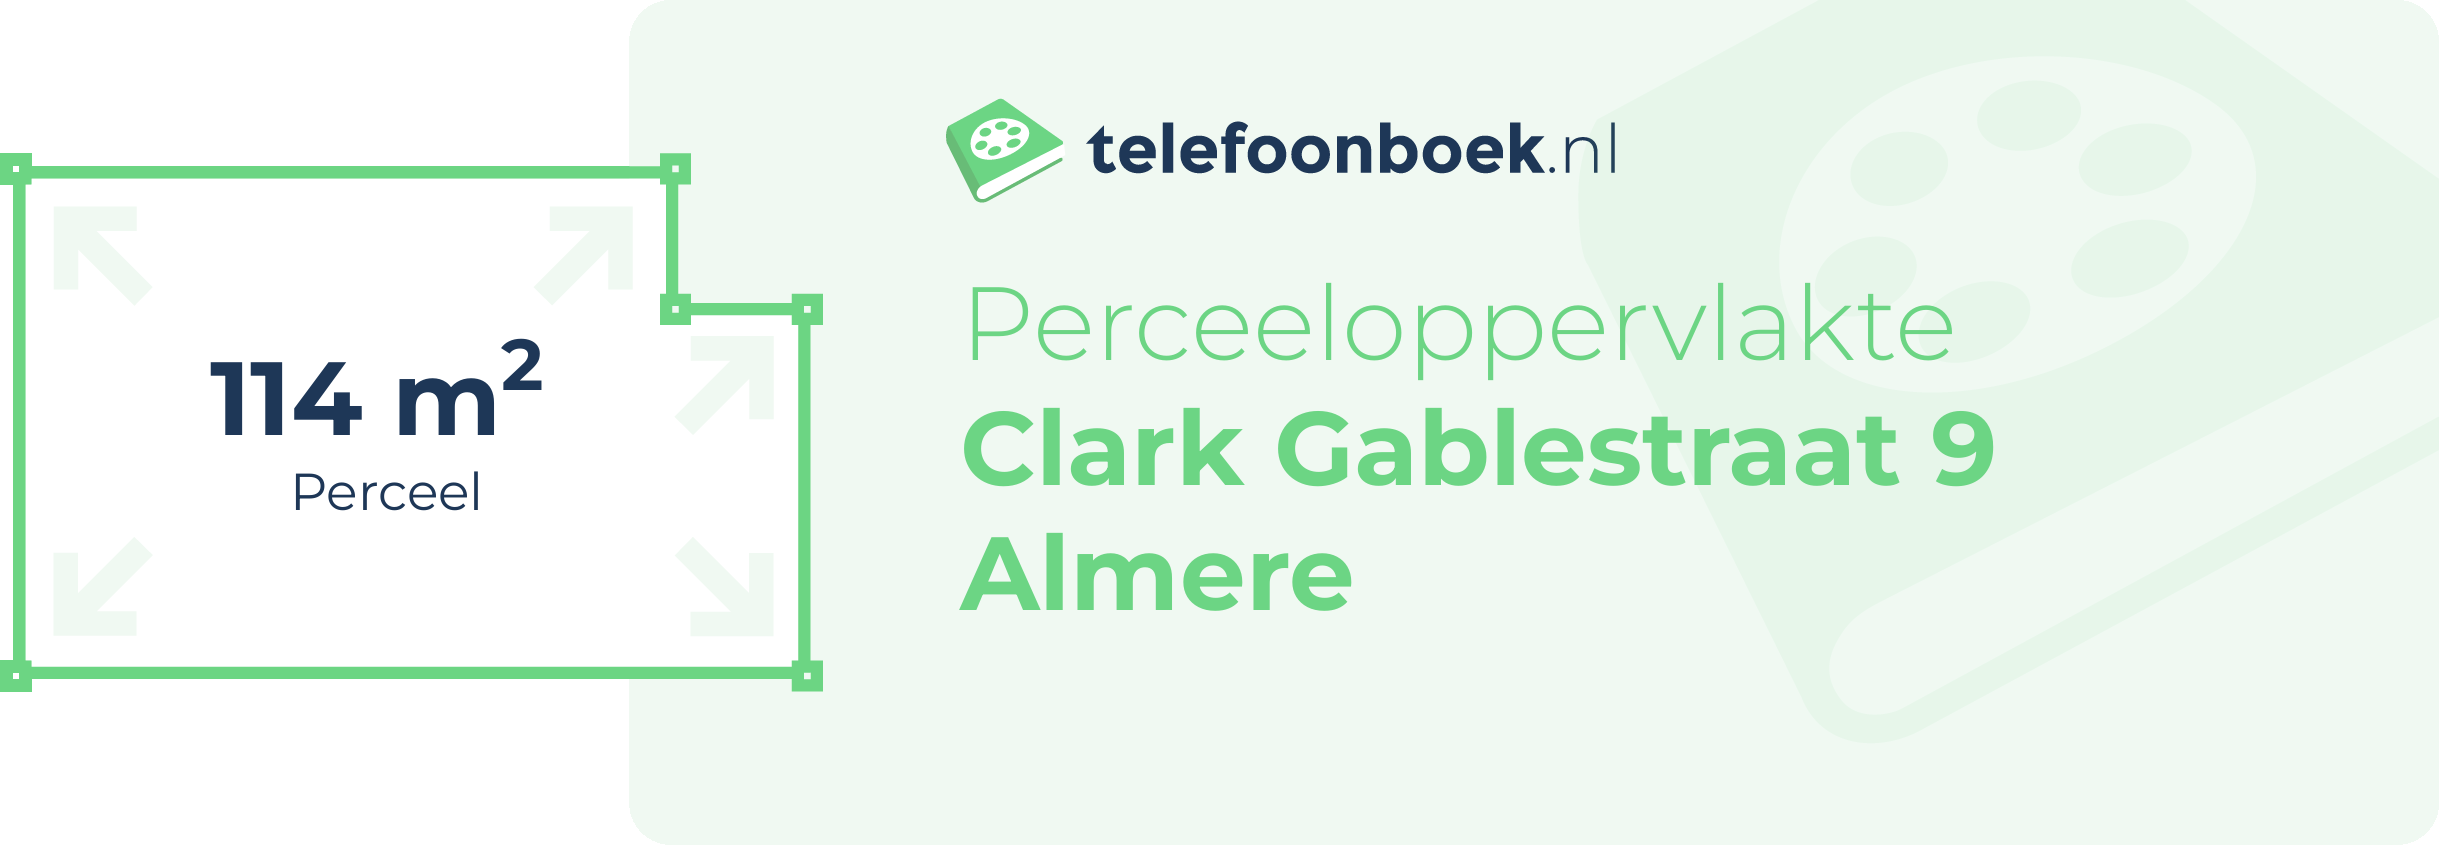 Perceeloppervlakte Clark Gablestraat 9 Almere